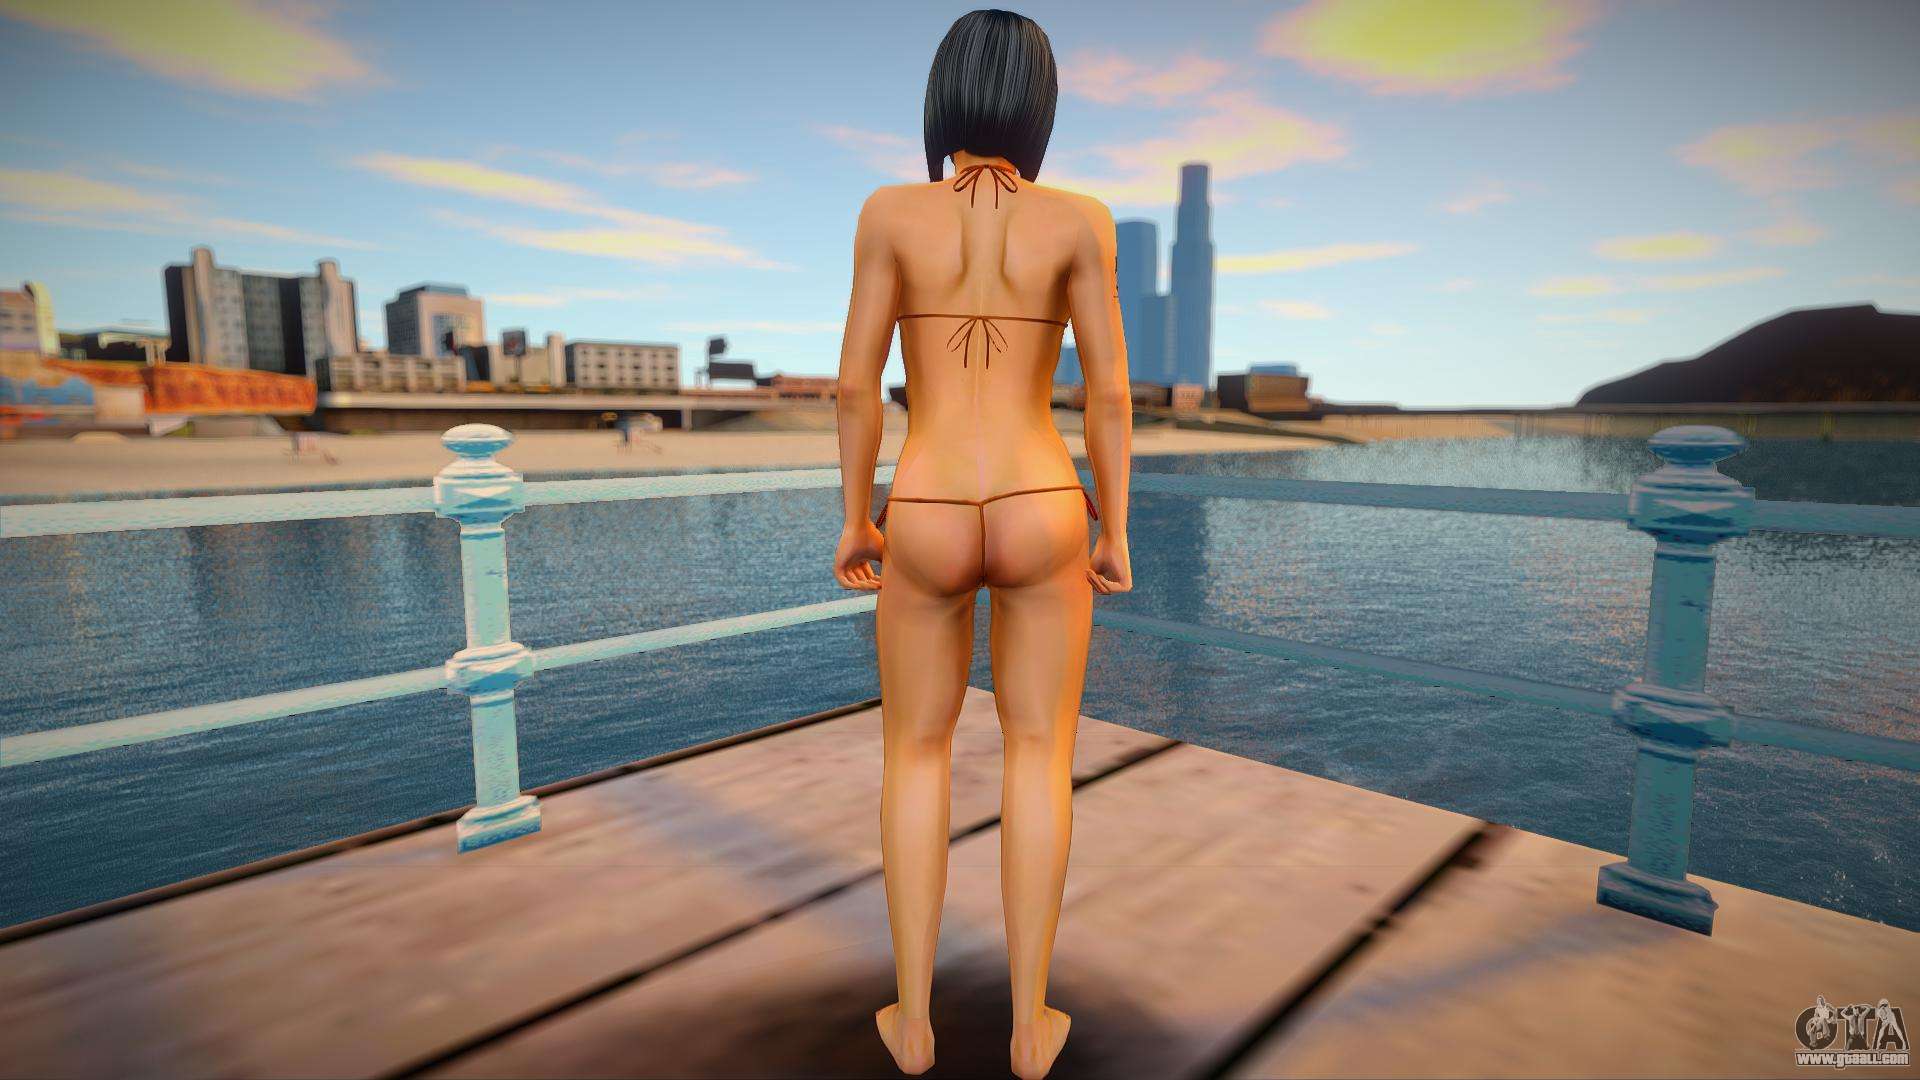 arturo maxwell recommends gta 5 nude beach pic